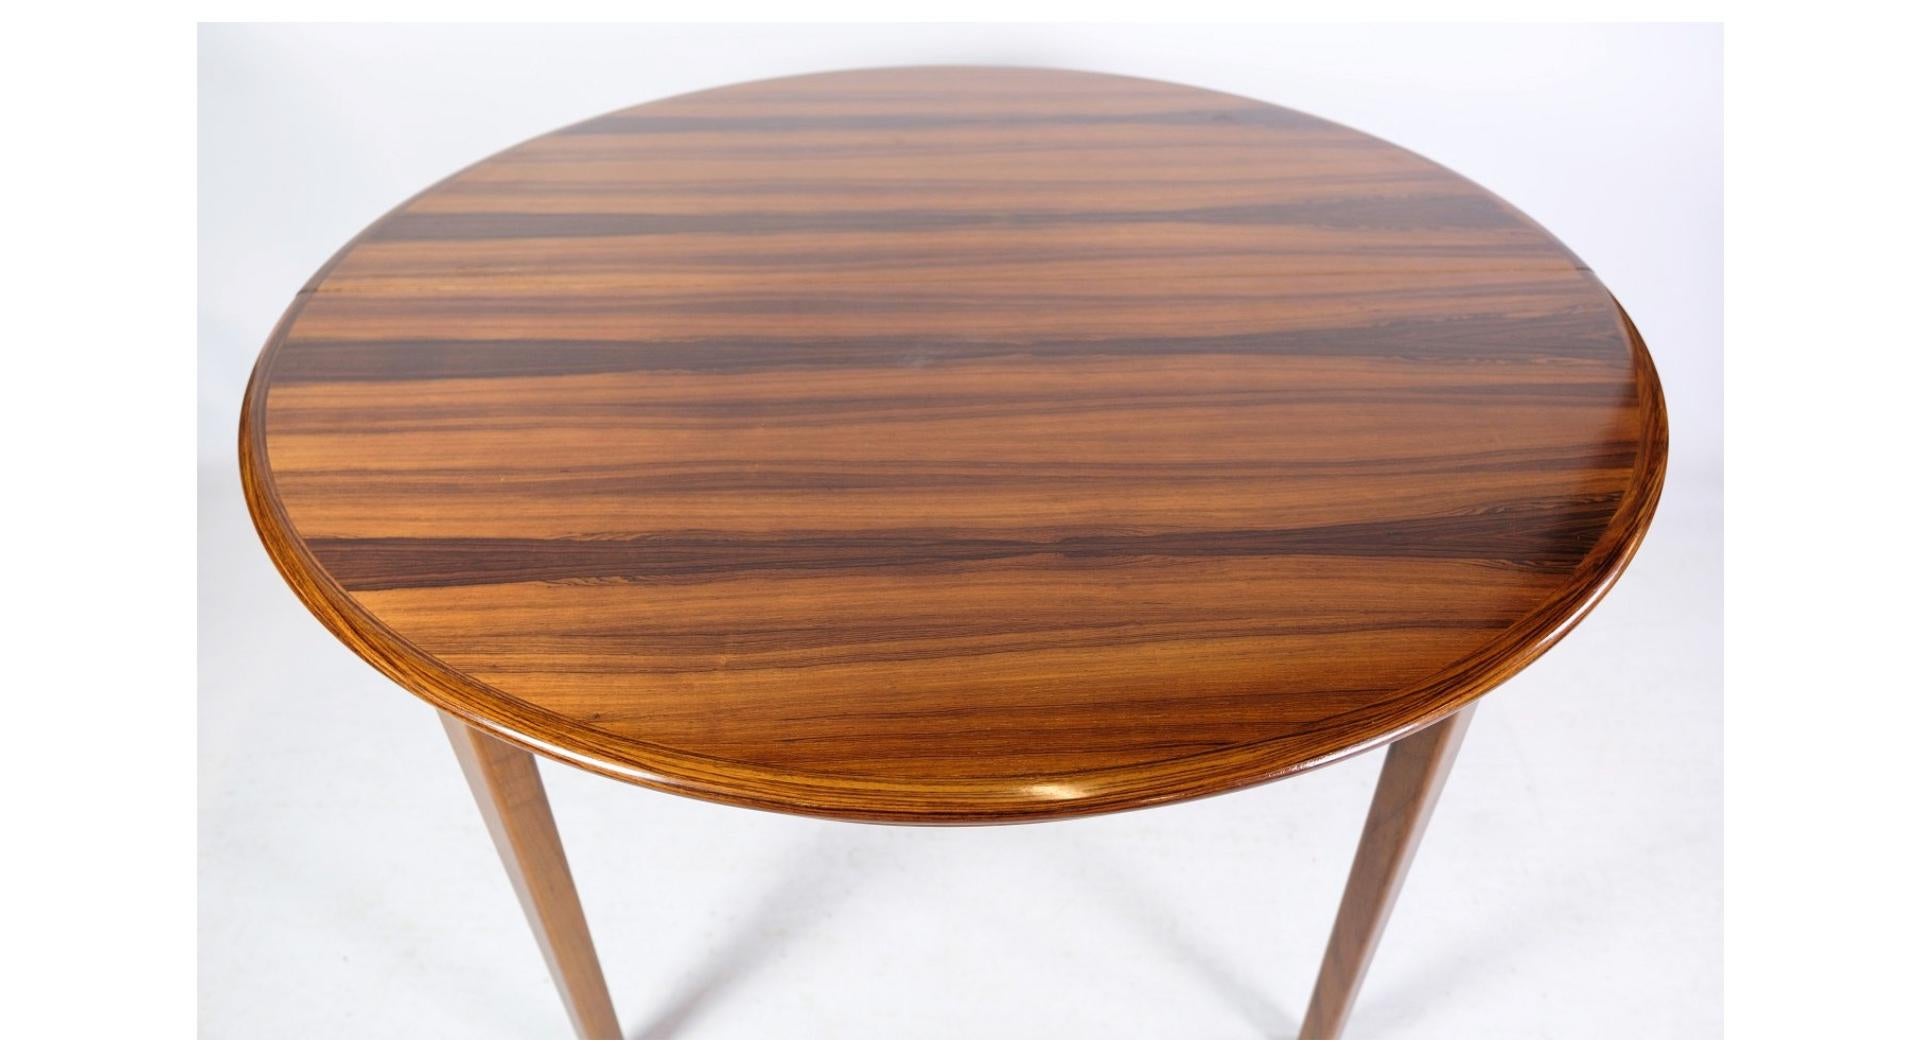 La table de salle à manger en bois de rose, conçue par Johannes Andersen et fabriquée à Uldum Møbelfabrik dans les années 1960, est un exemple remarquable du mobilier danois du milieu du siècle. Réputée pour son artisanat exquis et son élégance